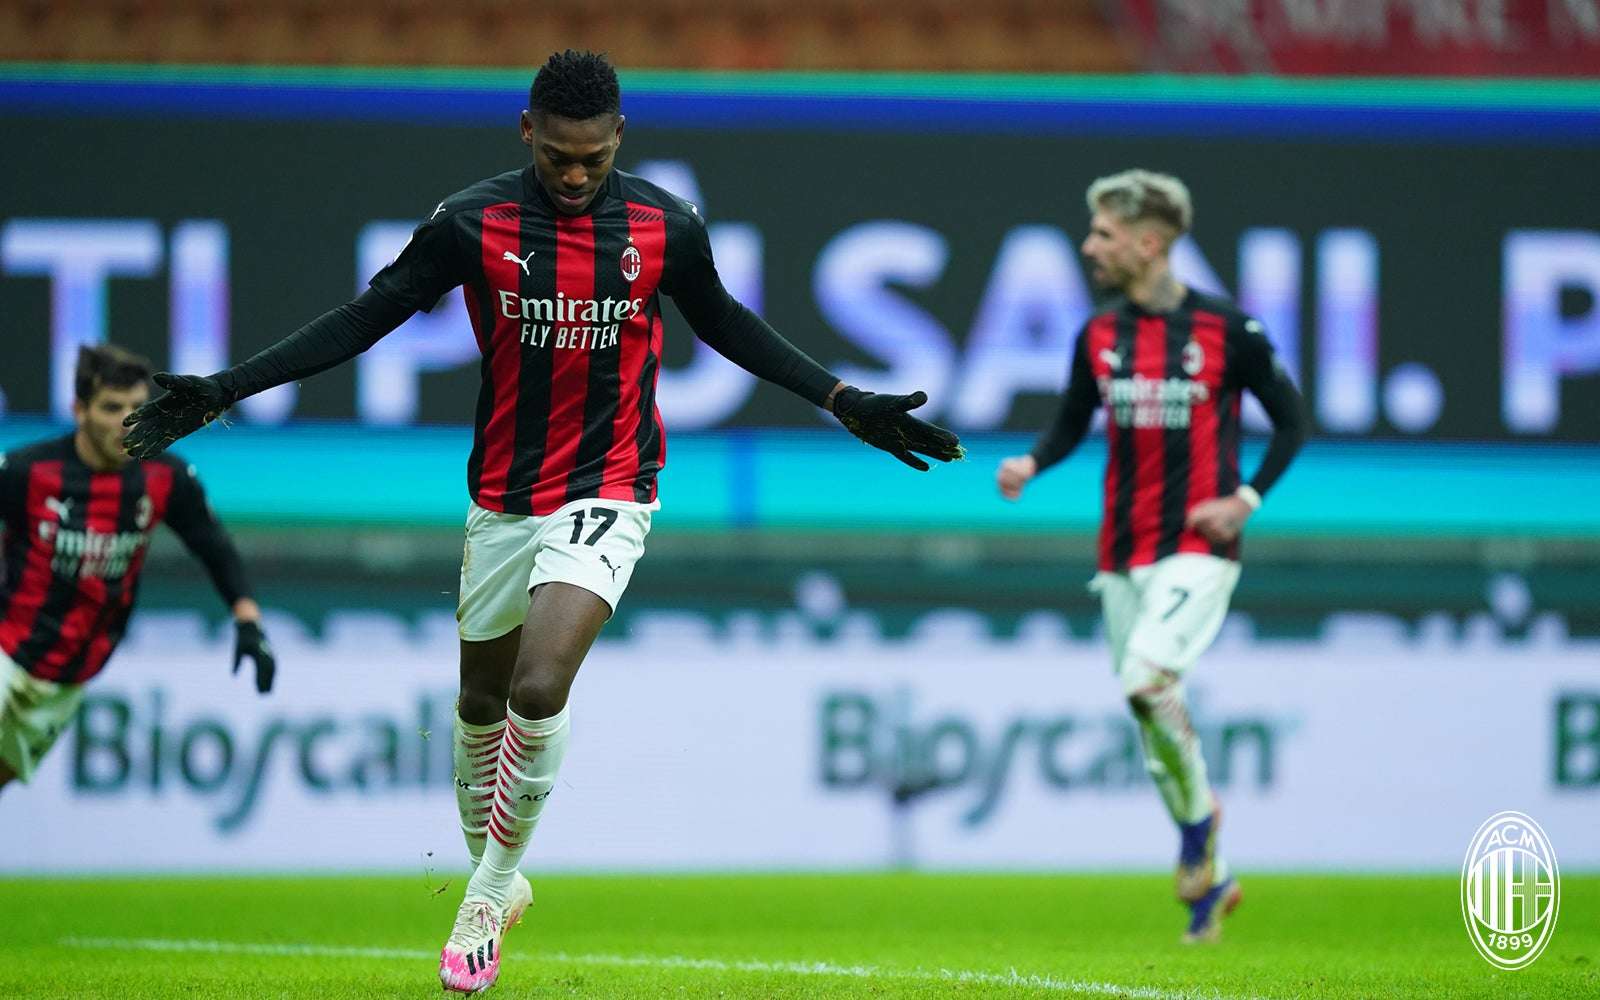 Nyolc jó meccs miatt eldobta a jövőjét az AC Milan? - Eurosport